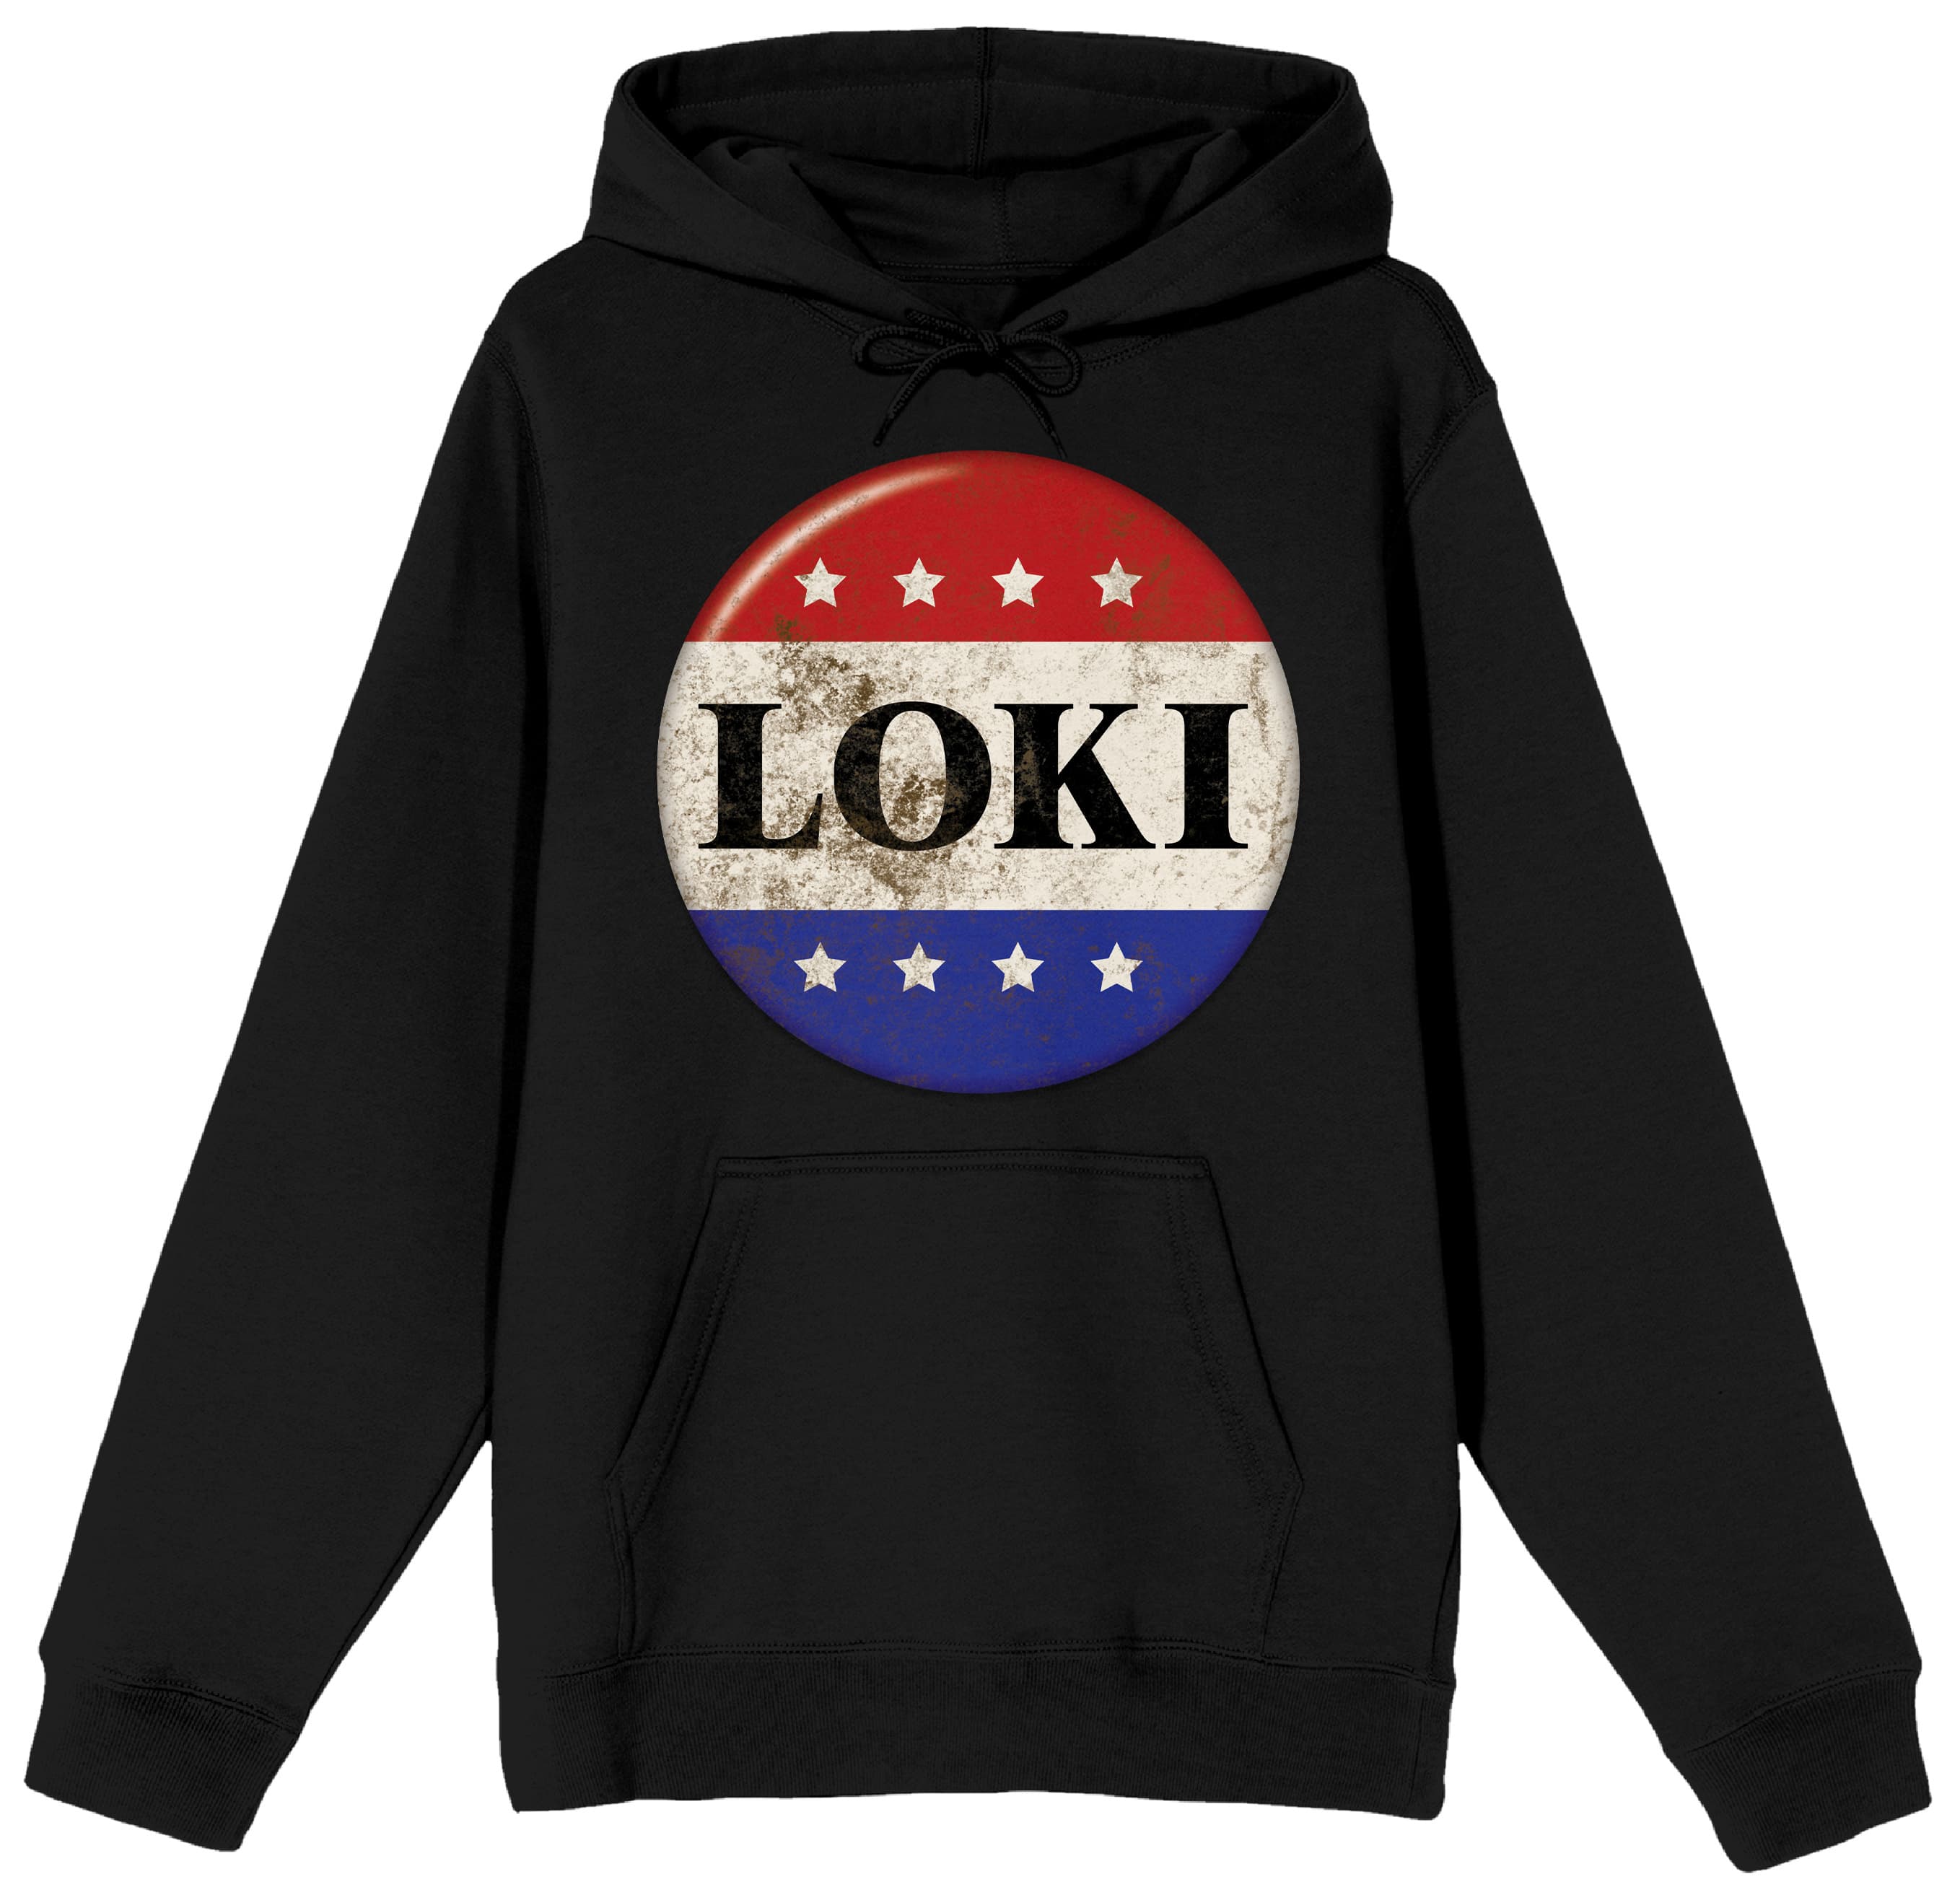 Avengers Thor Sweatshirt Loki God of Mischief Sweatshirt Marvel Shirt Superhero Shirt Marvel Tv Series Trendy Shirt